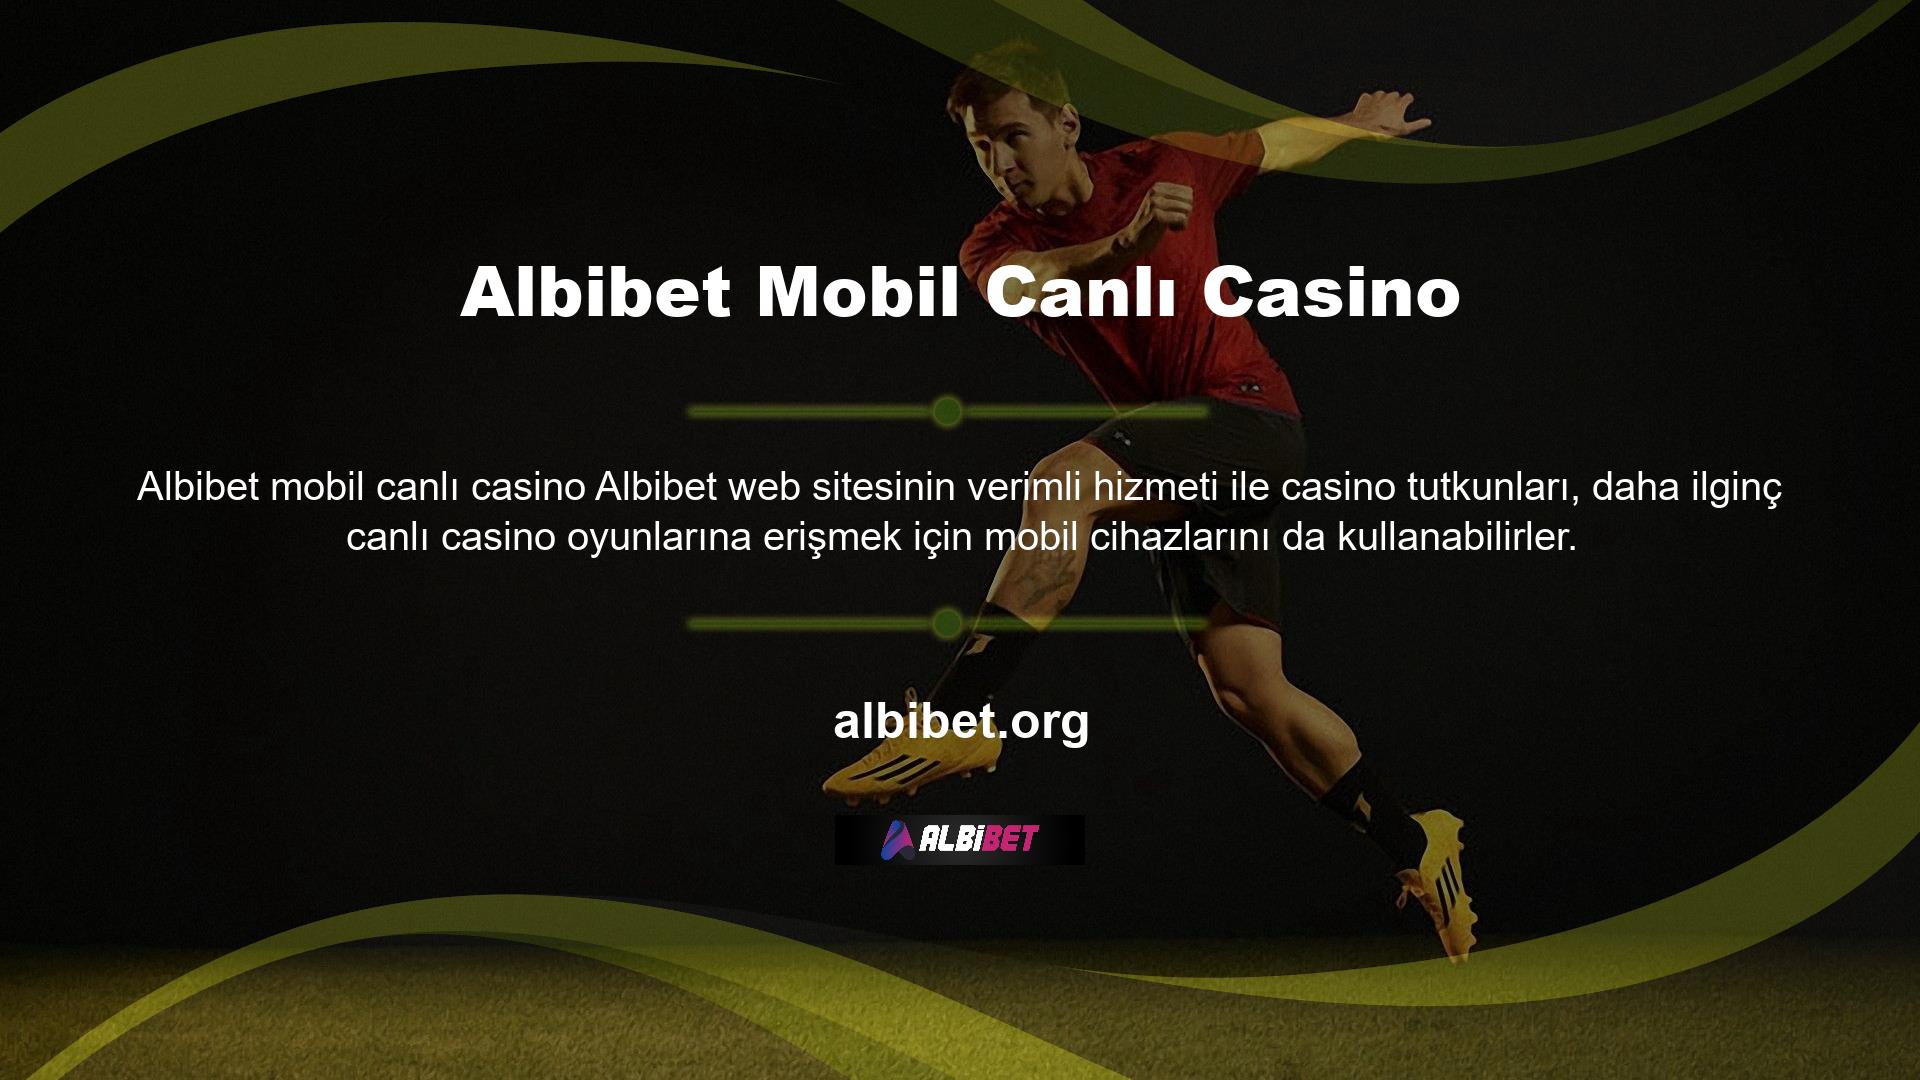 Albibet web sitesi için özel olarak geliştirilmiş bir mobil uygulama, her türlü oyunu en iyi görüntü kalitesiyle oynamanıza olanak tanır